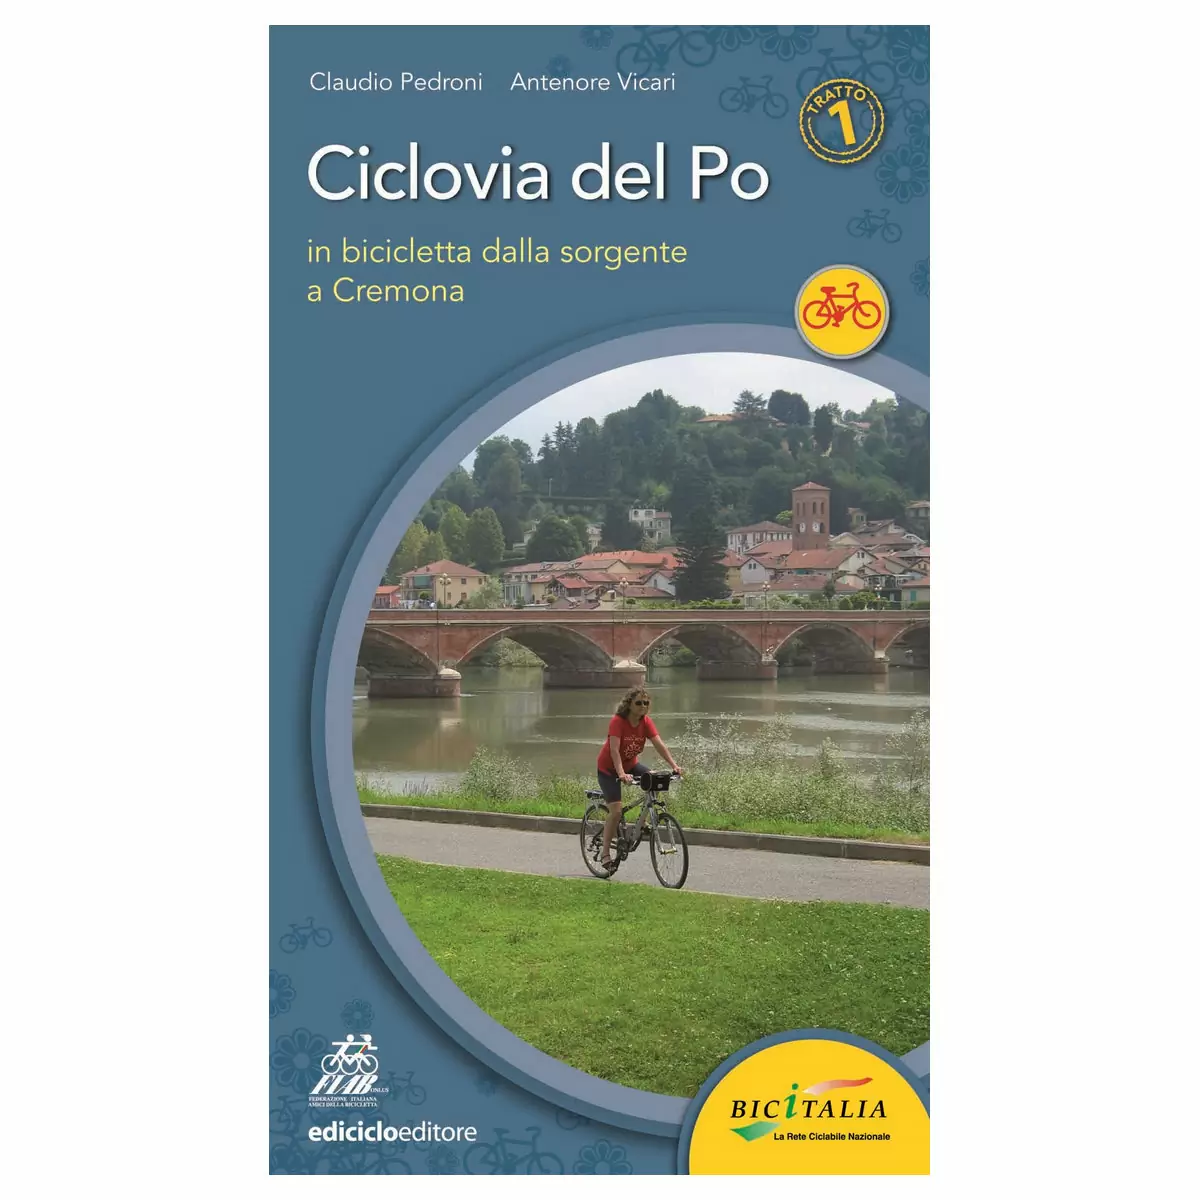 Livre Ciclovia del Po tratto 1- Dalla sorgente a Cremona, Pedroni, Vicari - image